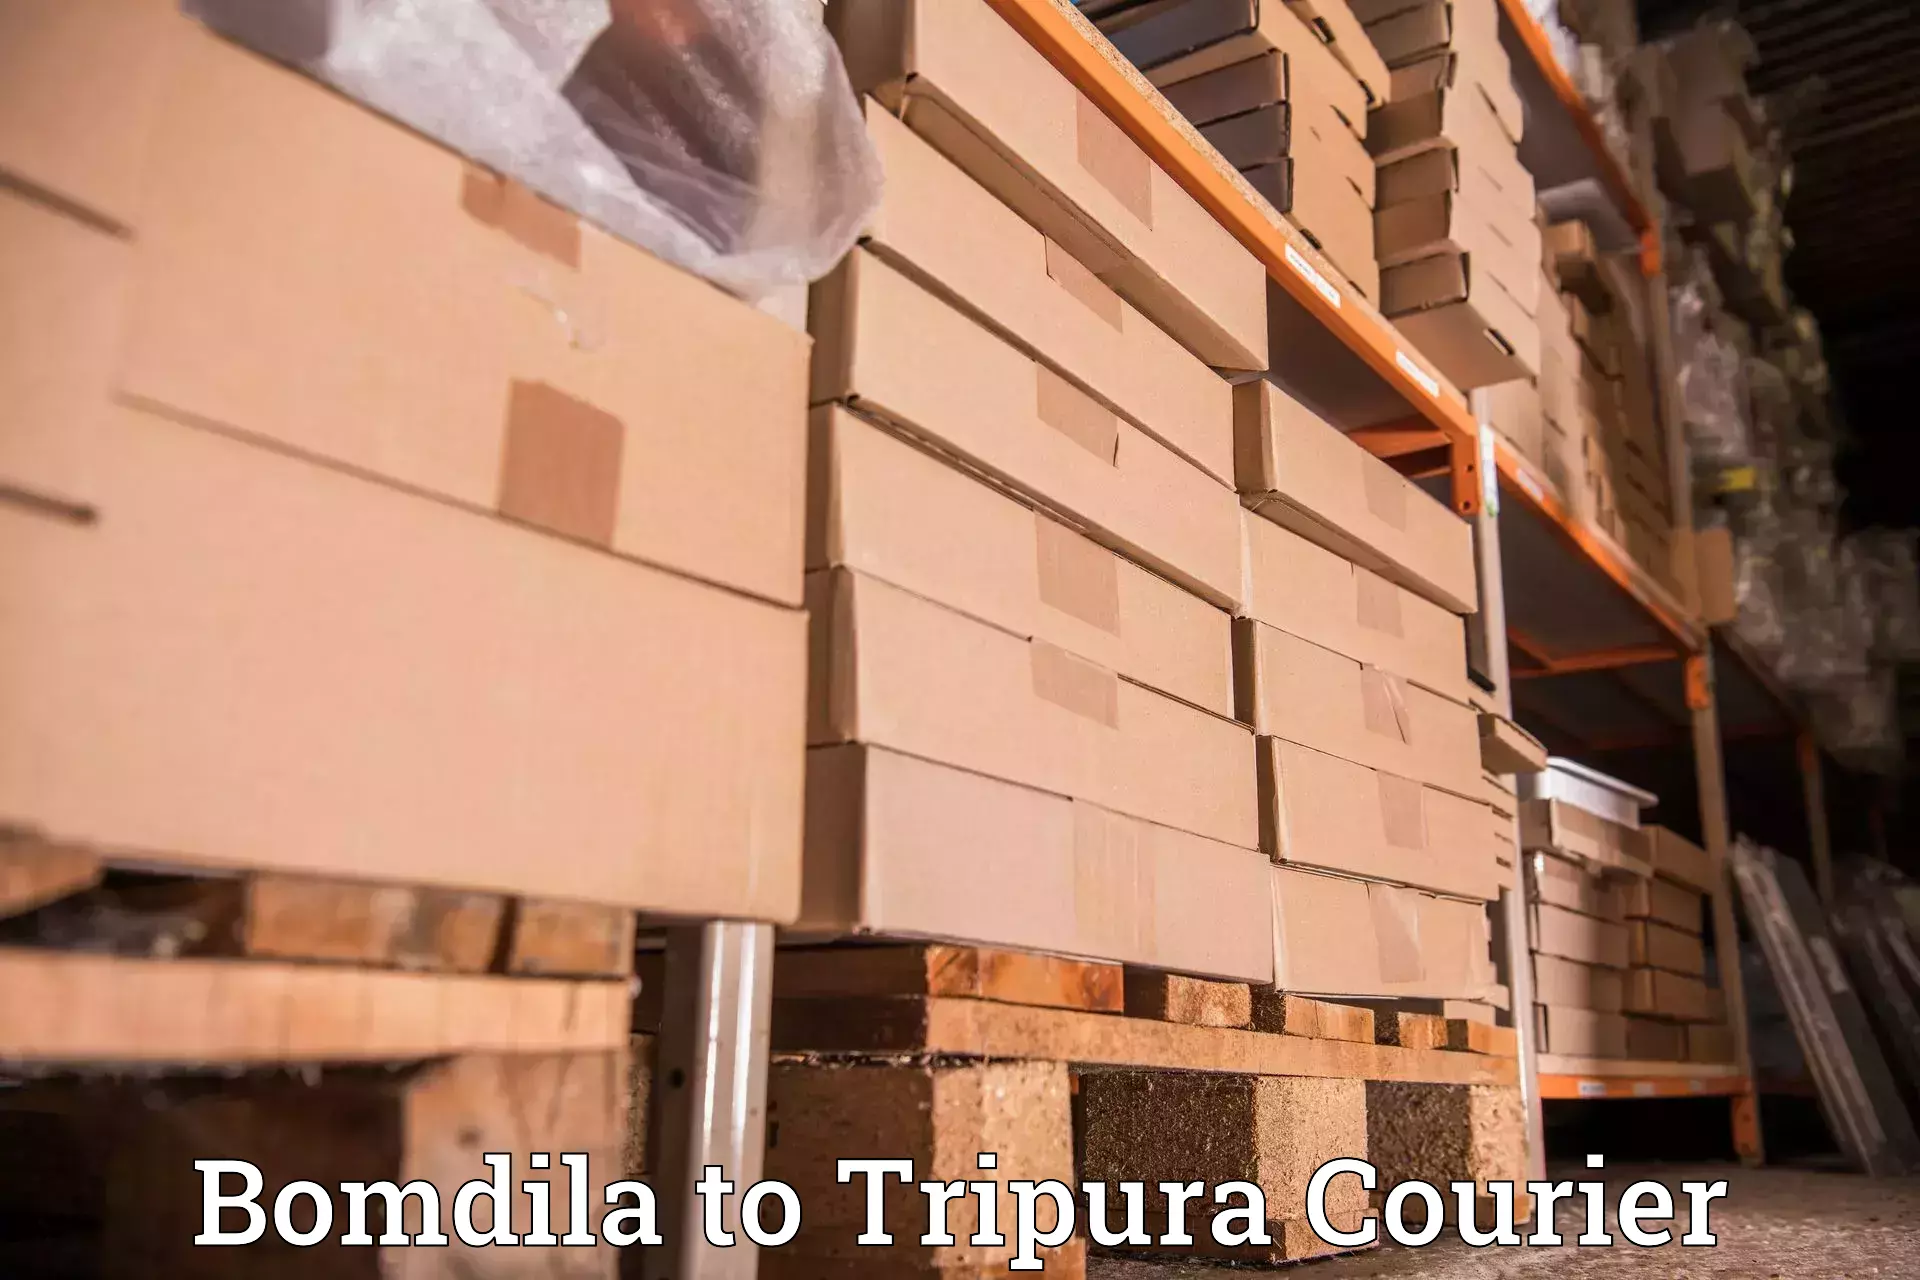 Courier service comparison in Bomdila to Agartala